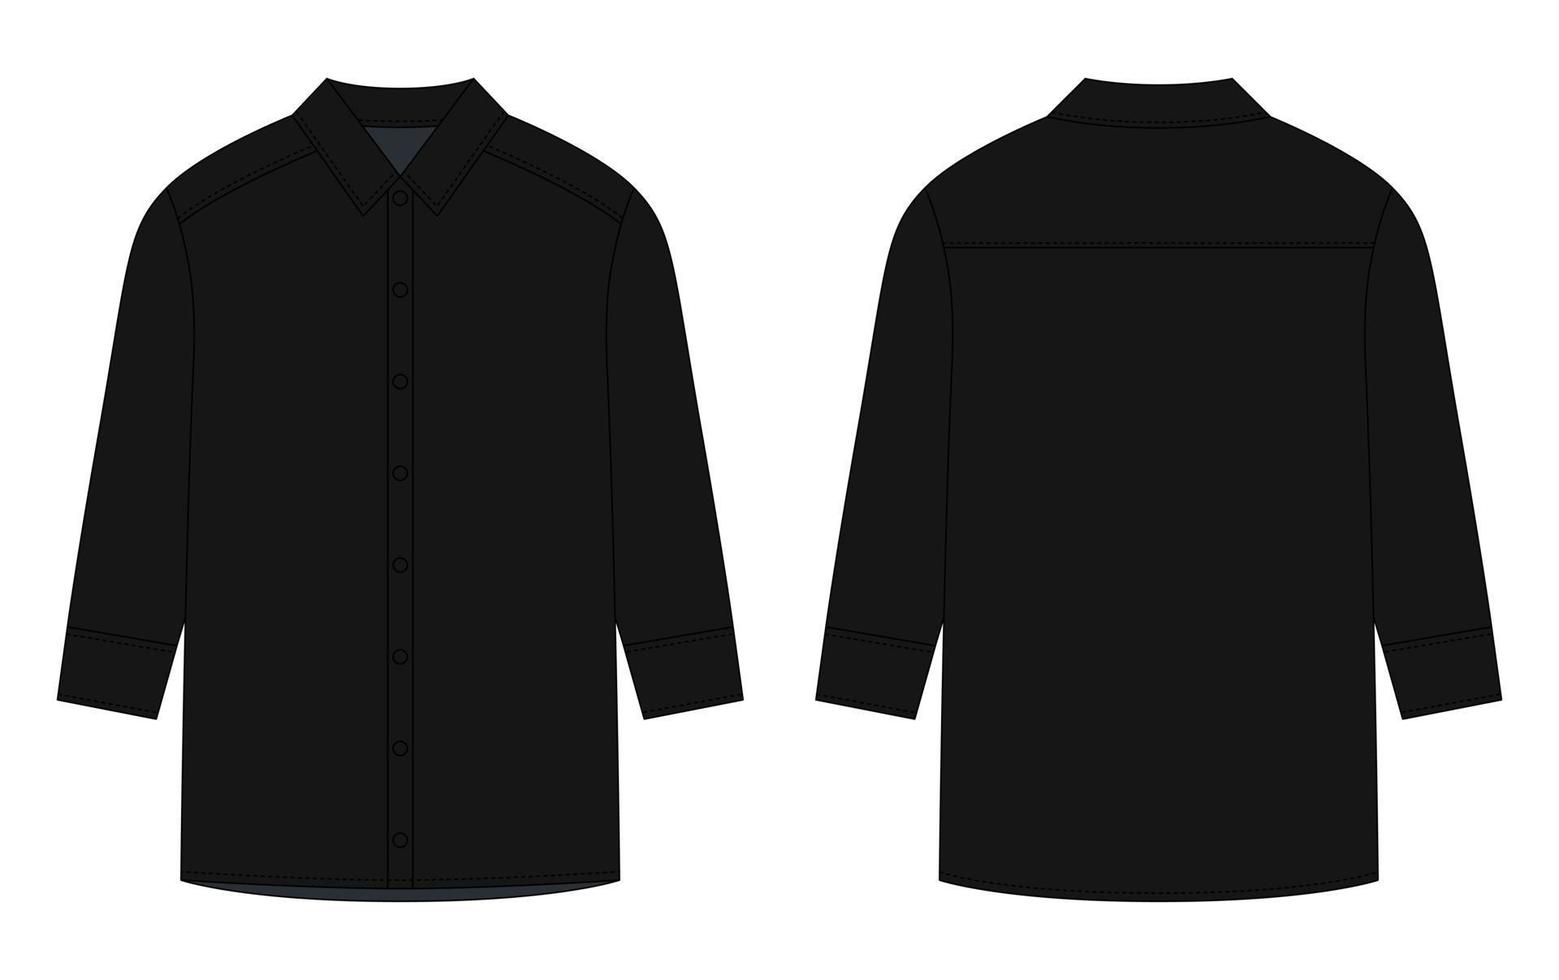 chemise oversize à manches longues et croquis technique de boutons. couleur noire. vecteur